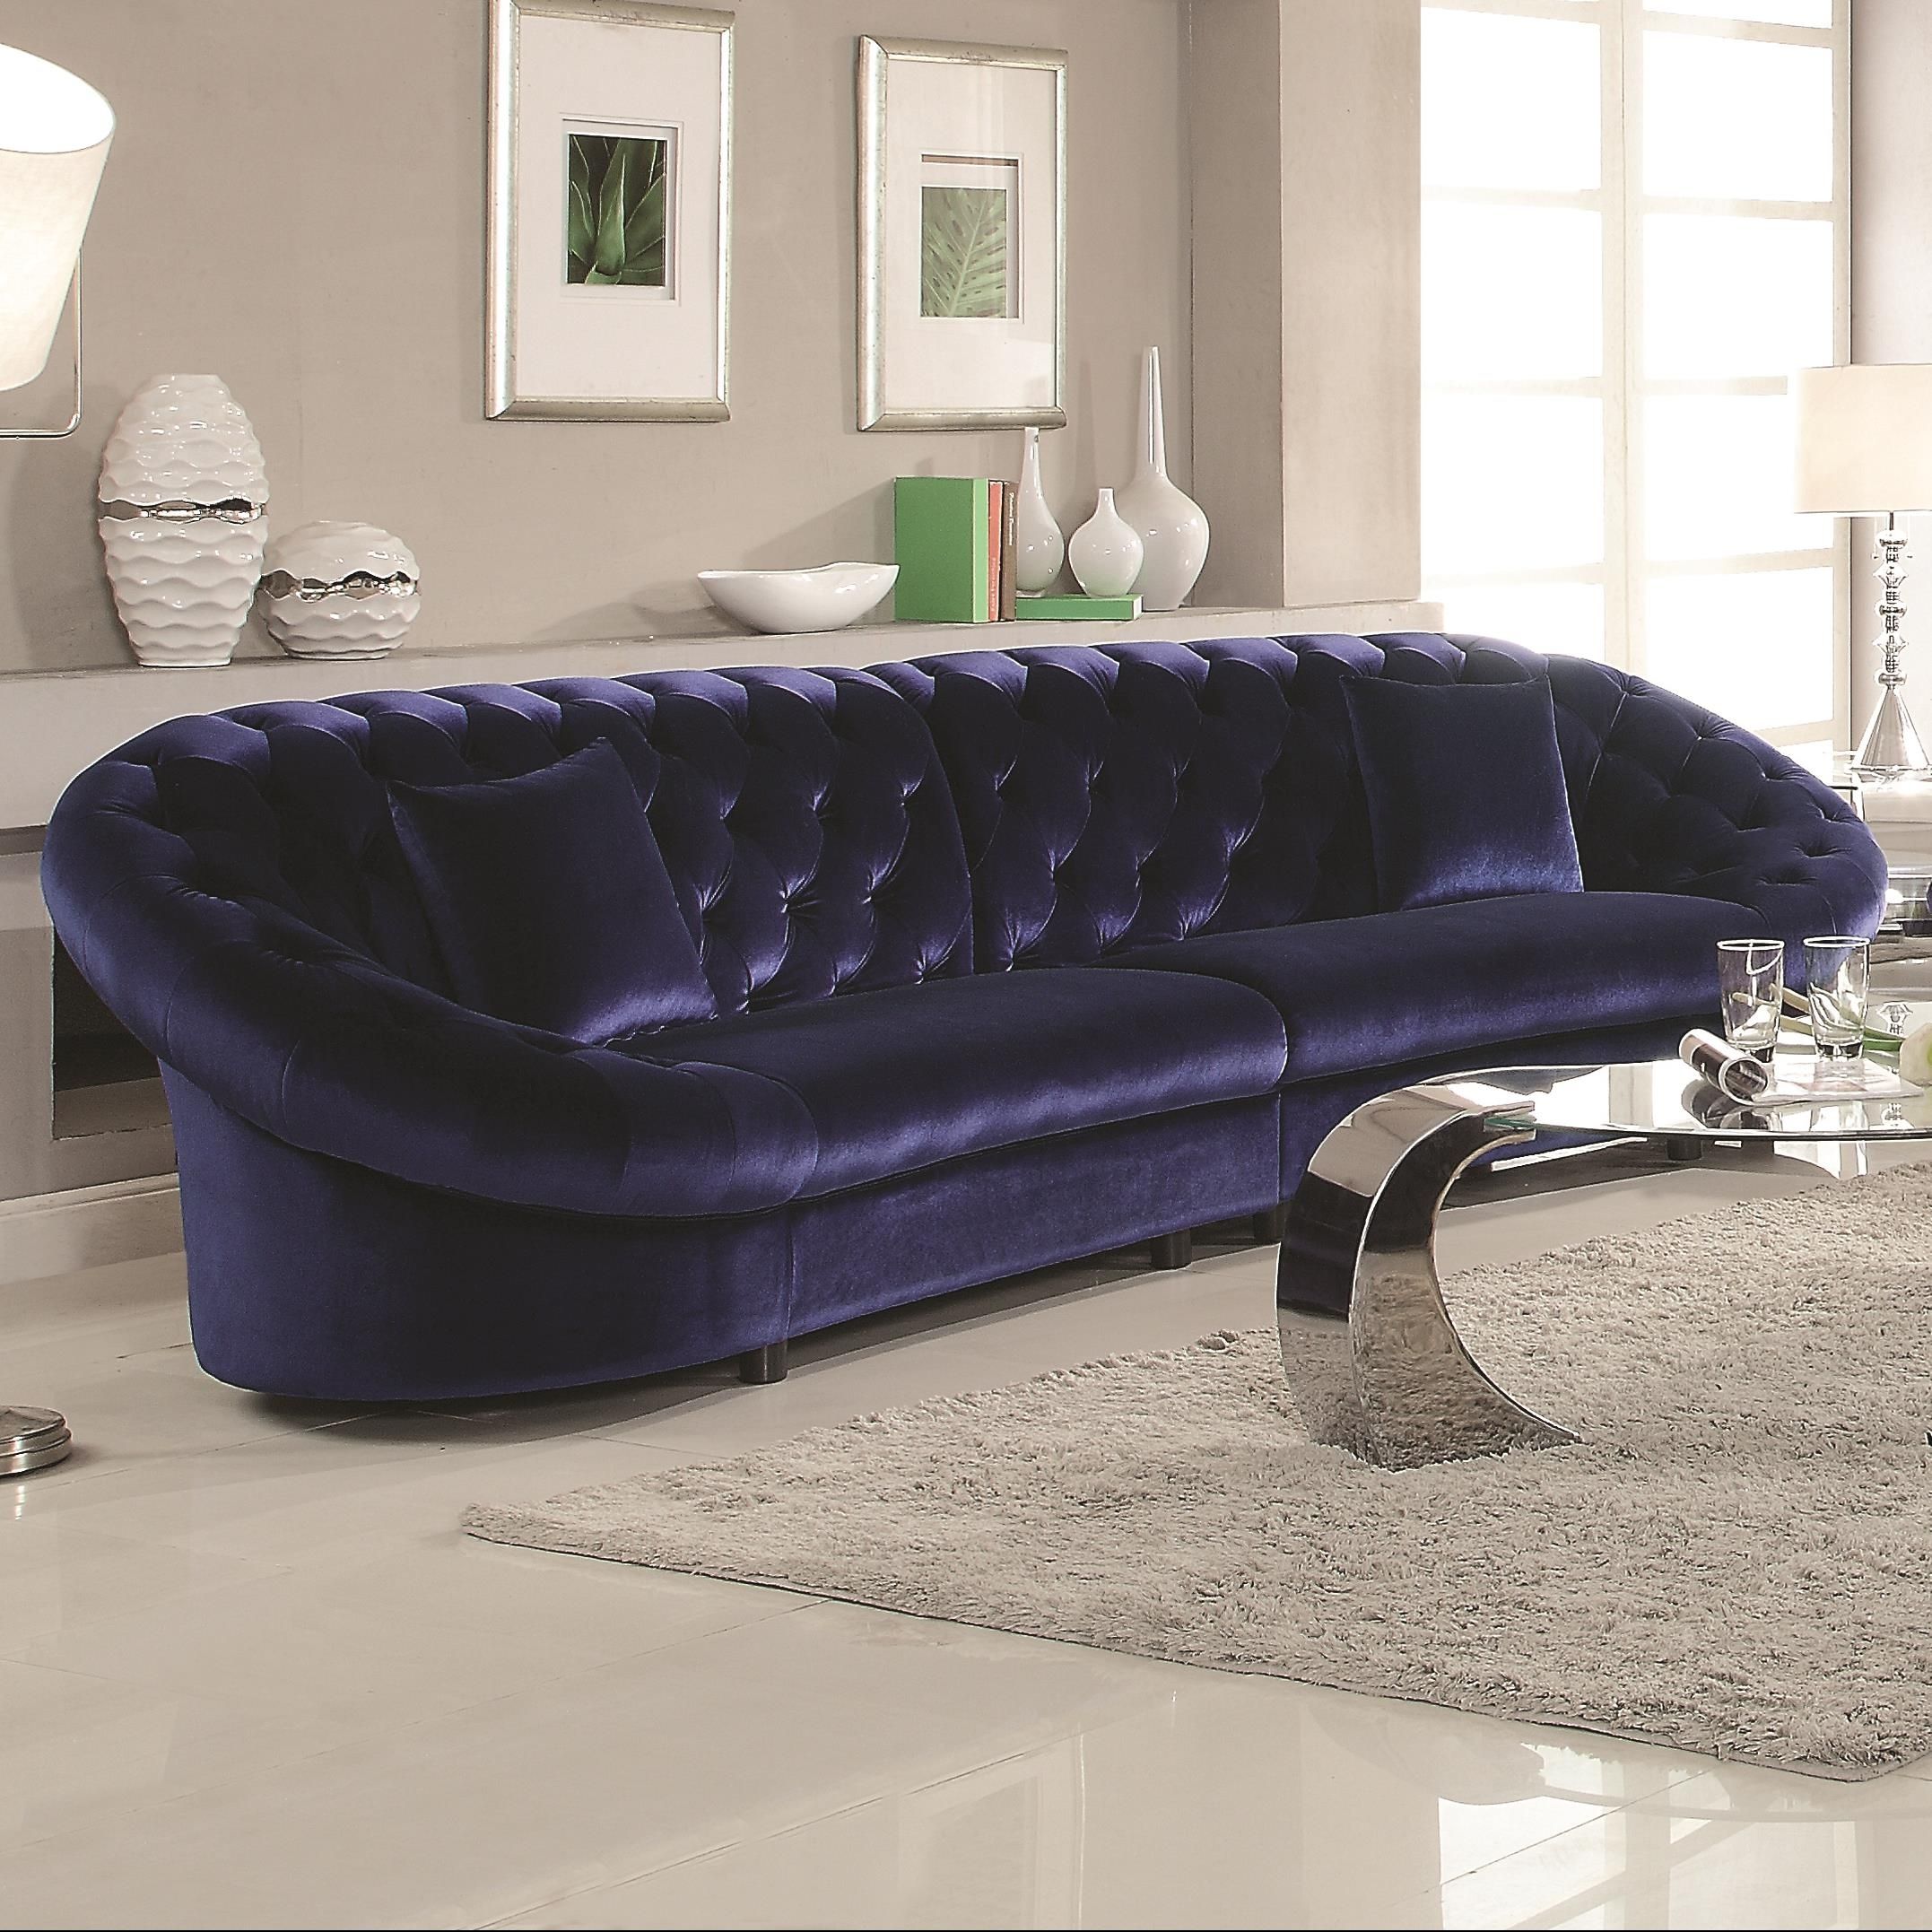 Romanus Mid Century Modern Blue Velvet Sectional Sofa | Quality Intended For Velvet Sectional Sofas (View 10 of 10)